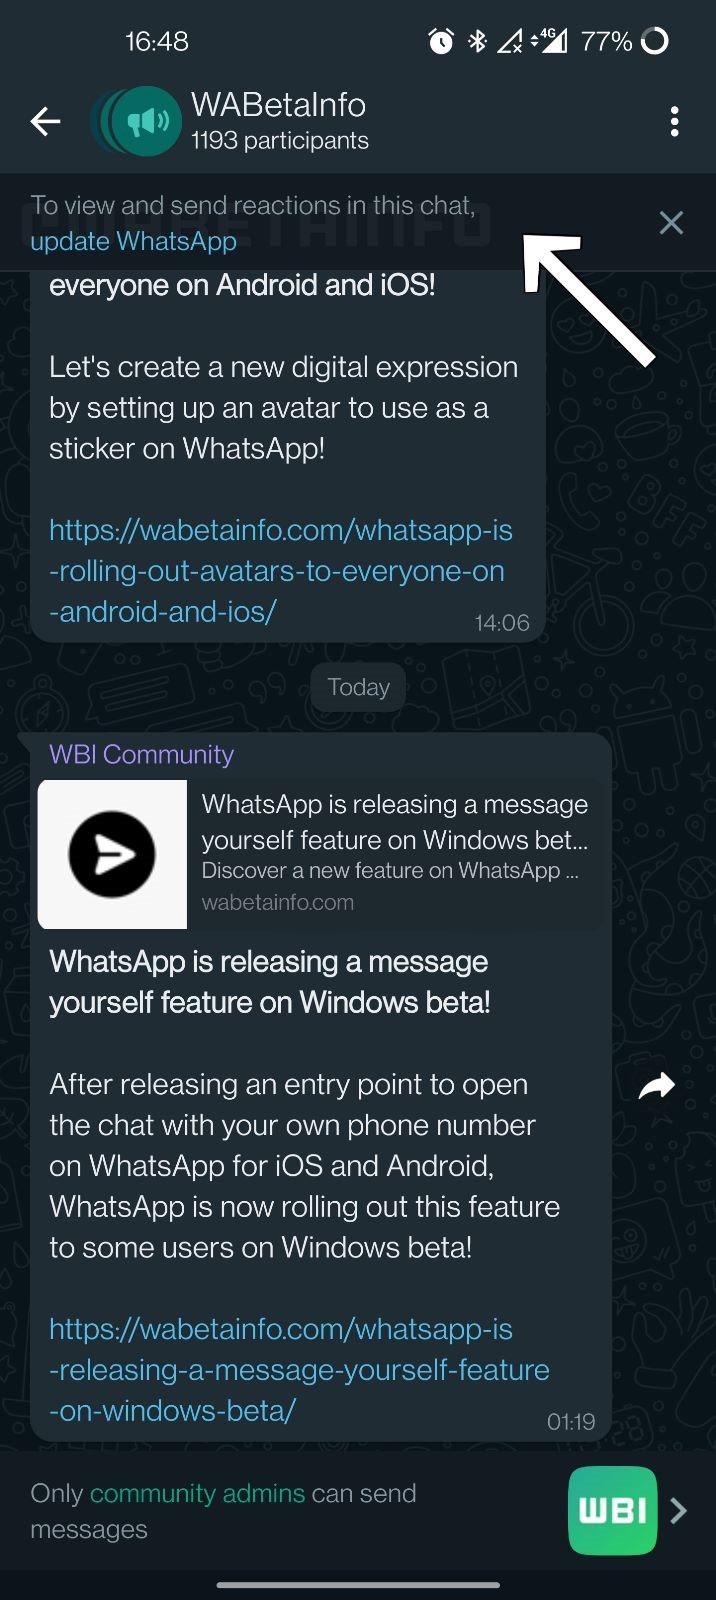 WhatsApp, Duyuru gruplarına tepki verme özelliği getirecek